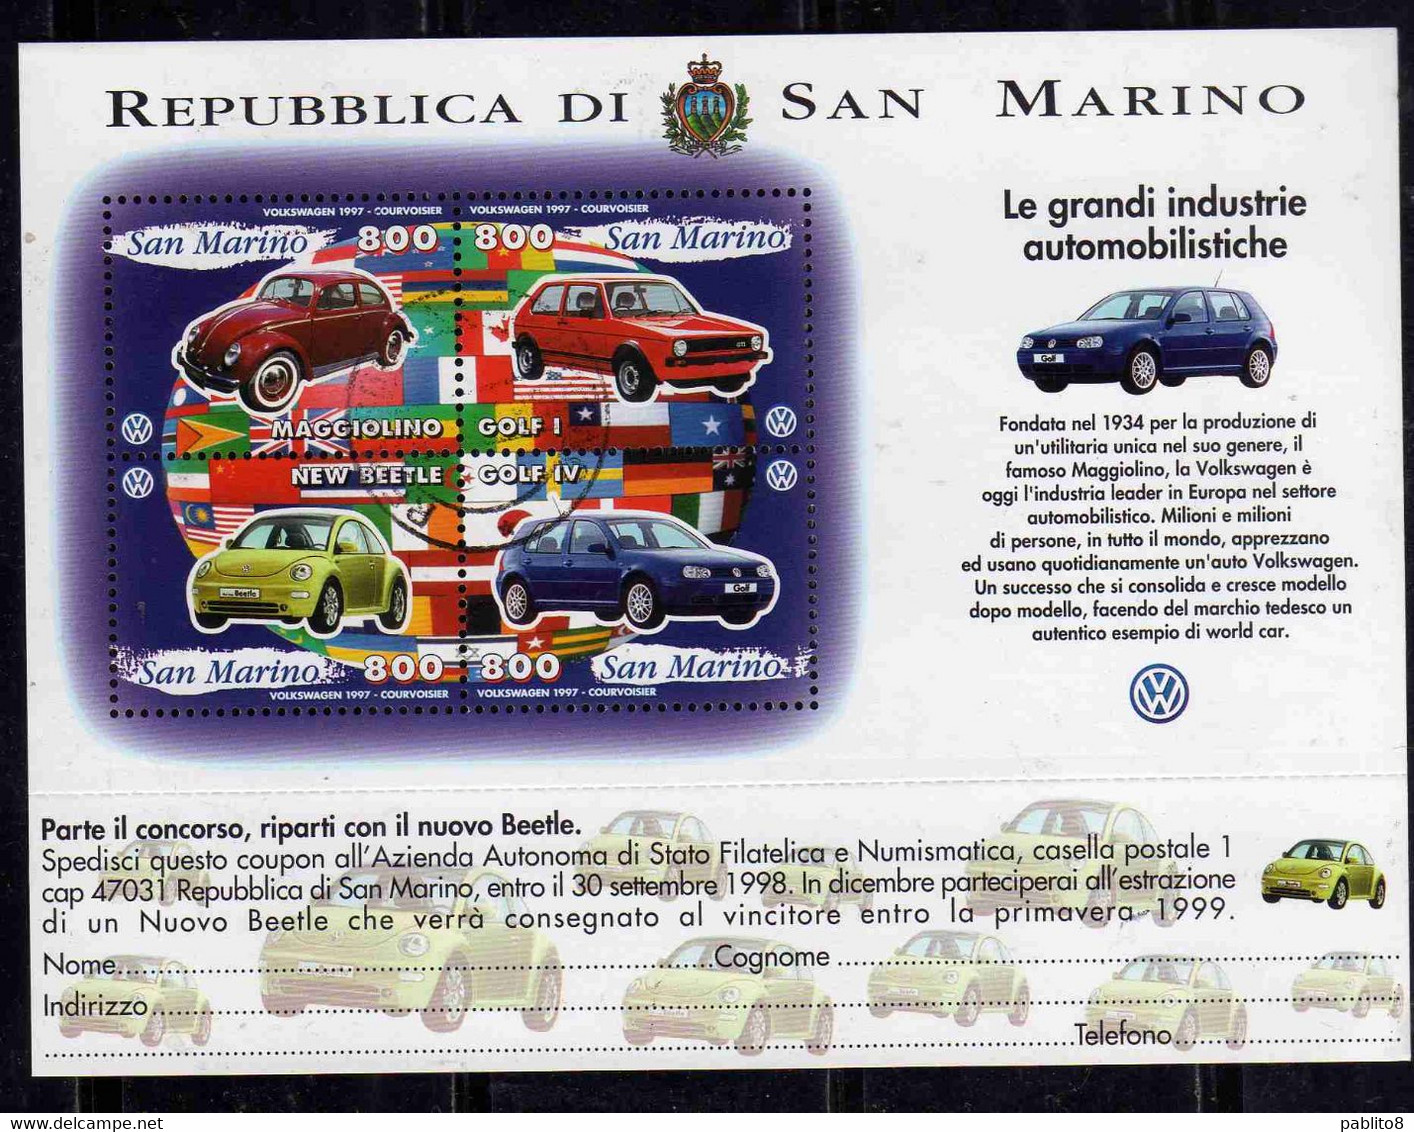 REPUBBLICA DI SAN MARINO 1997 LE GRANDI INDUSTRIE AUTOMOBILISTICHE VOLKSWAGEN BLOCCO FOGLIETTO BLOCK SHEET USATO USED - Gebruikt